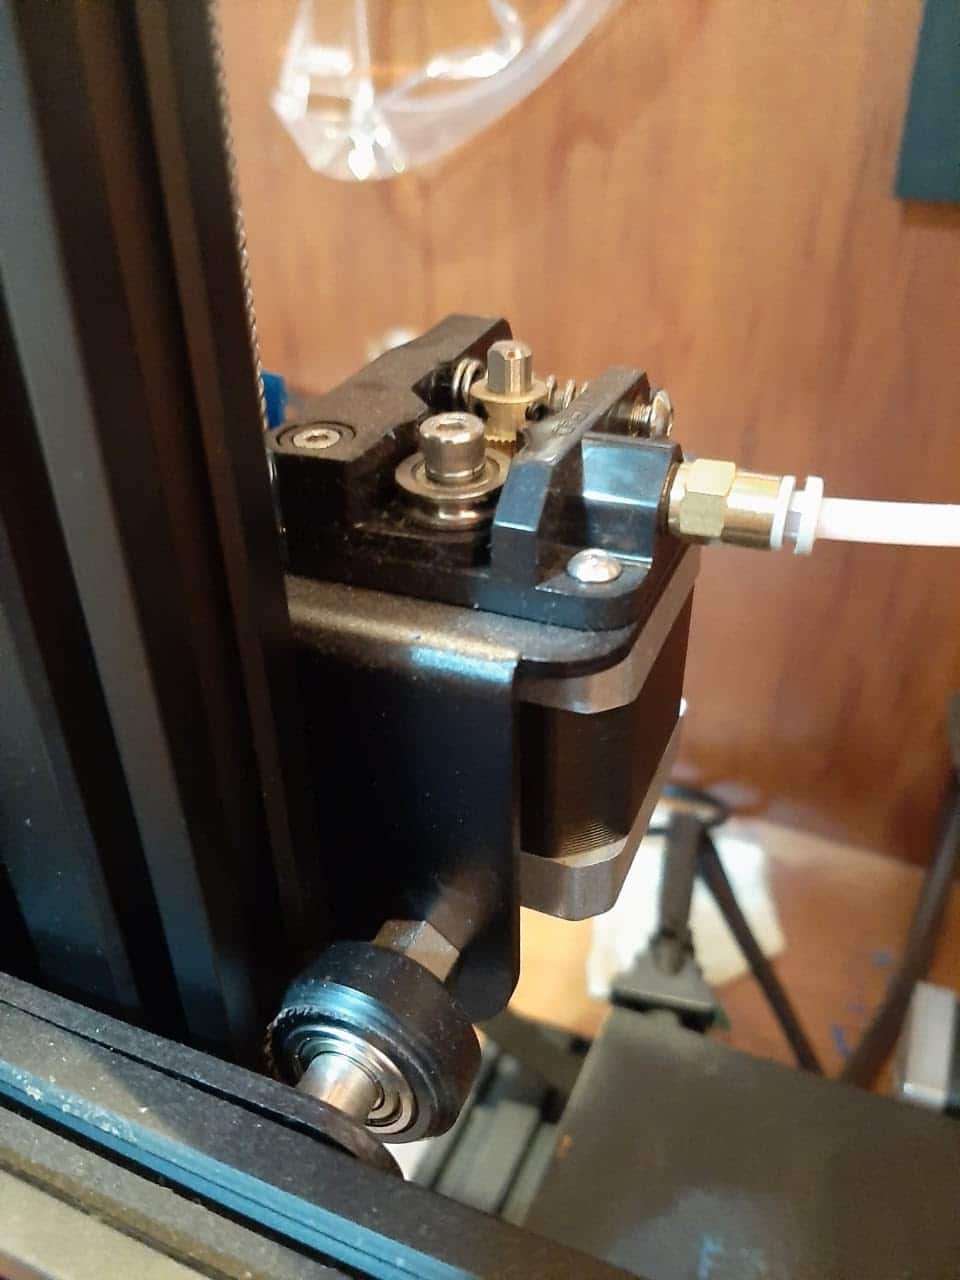 Tente conectar a impressora Ender 3 a outra porta USB disponível no computador.
Se possível, teste com um cabo USB diferente para descartar a possibilidade de um cabo defeituoso.